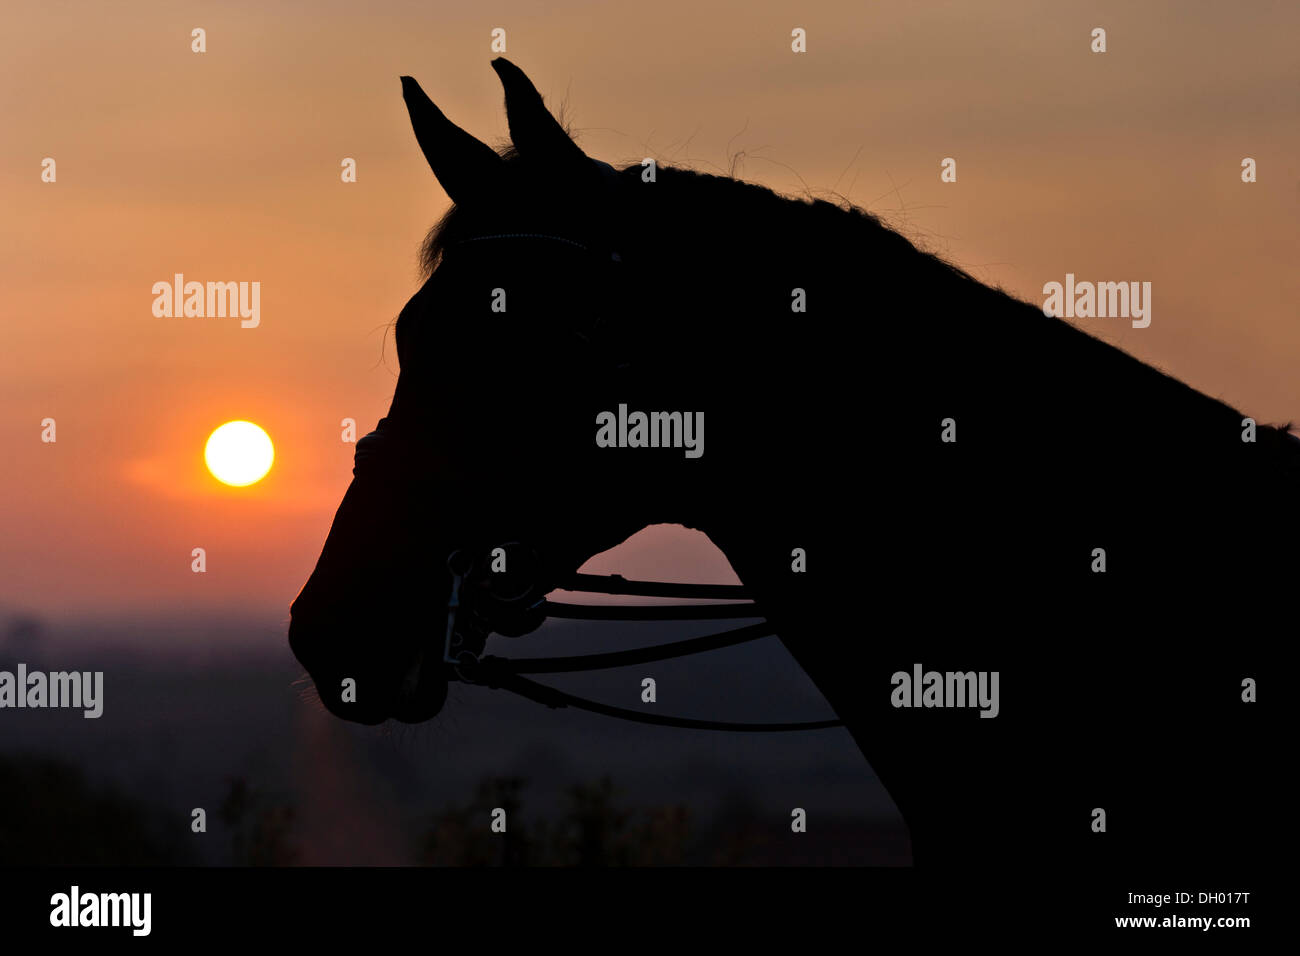 Oldenburg horse, avec faisceau, bridée, portrait au crépuscule, silhouette, Autriche Banque D'Images